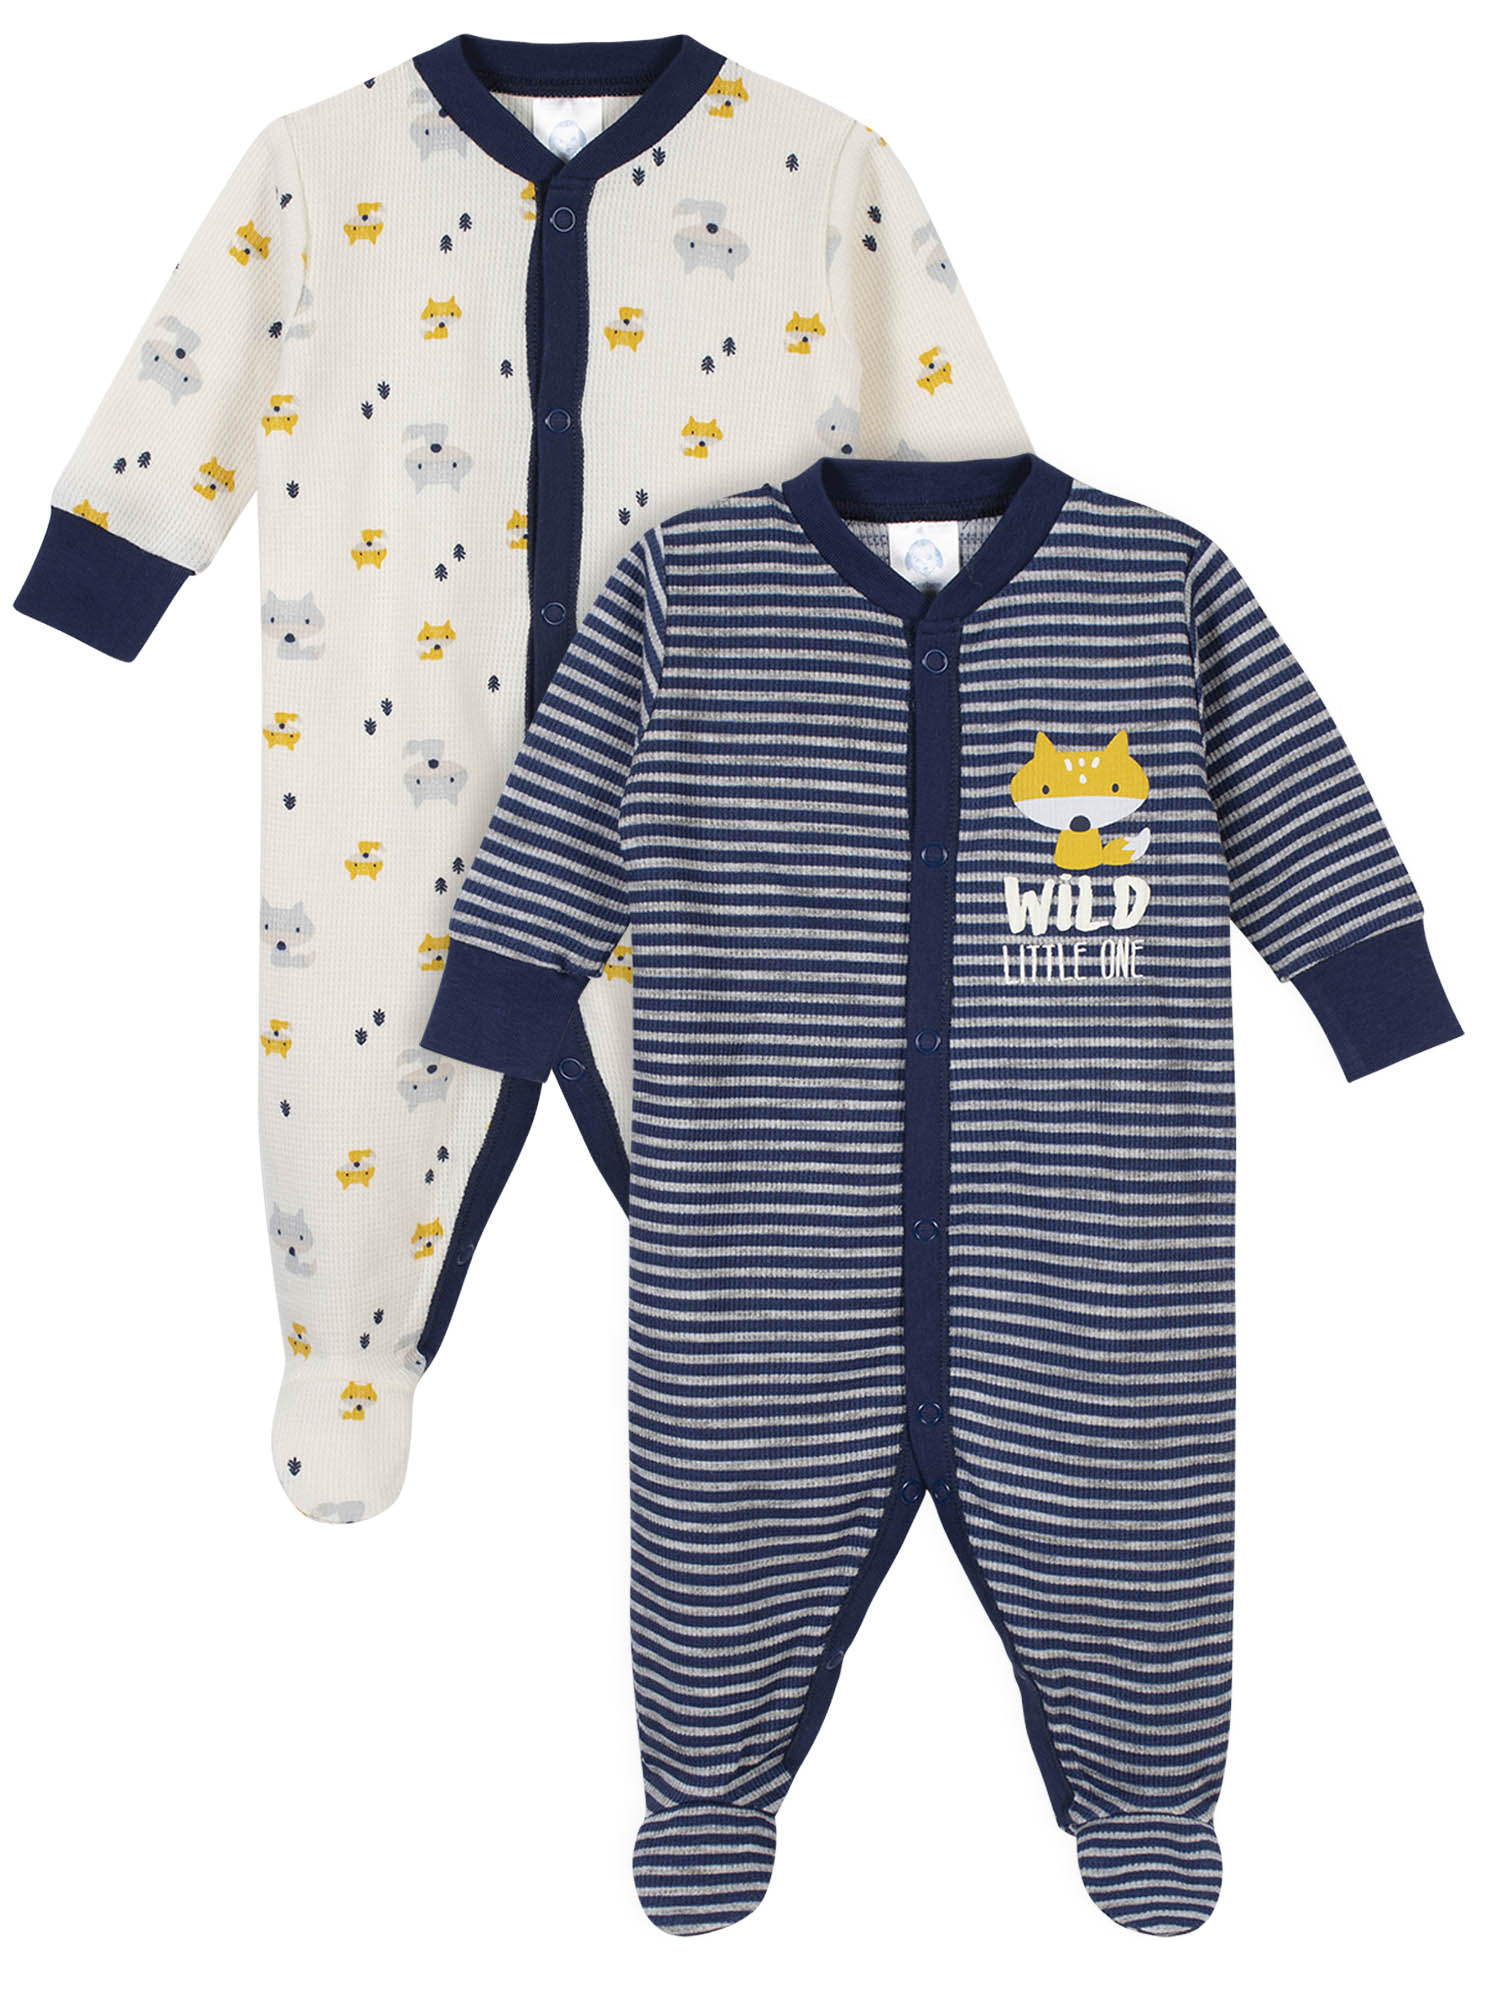 Gerber Baby Boy Thermal Footed Sleep 'N Play Pajamas, 2-Pack - image 1 of 11